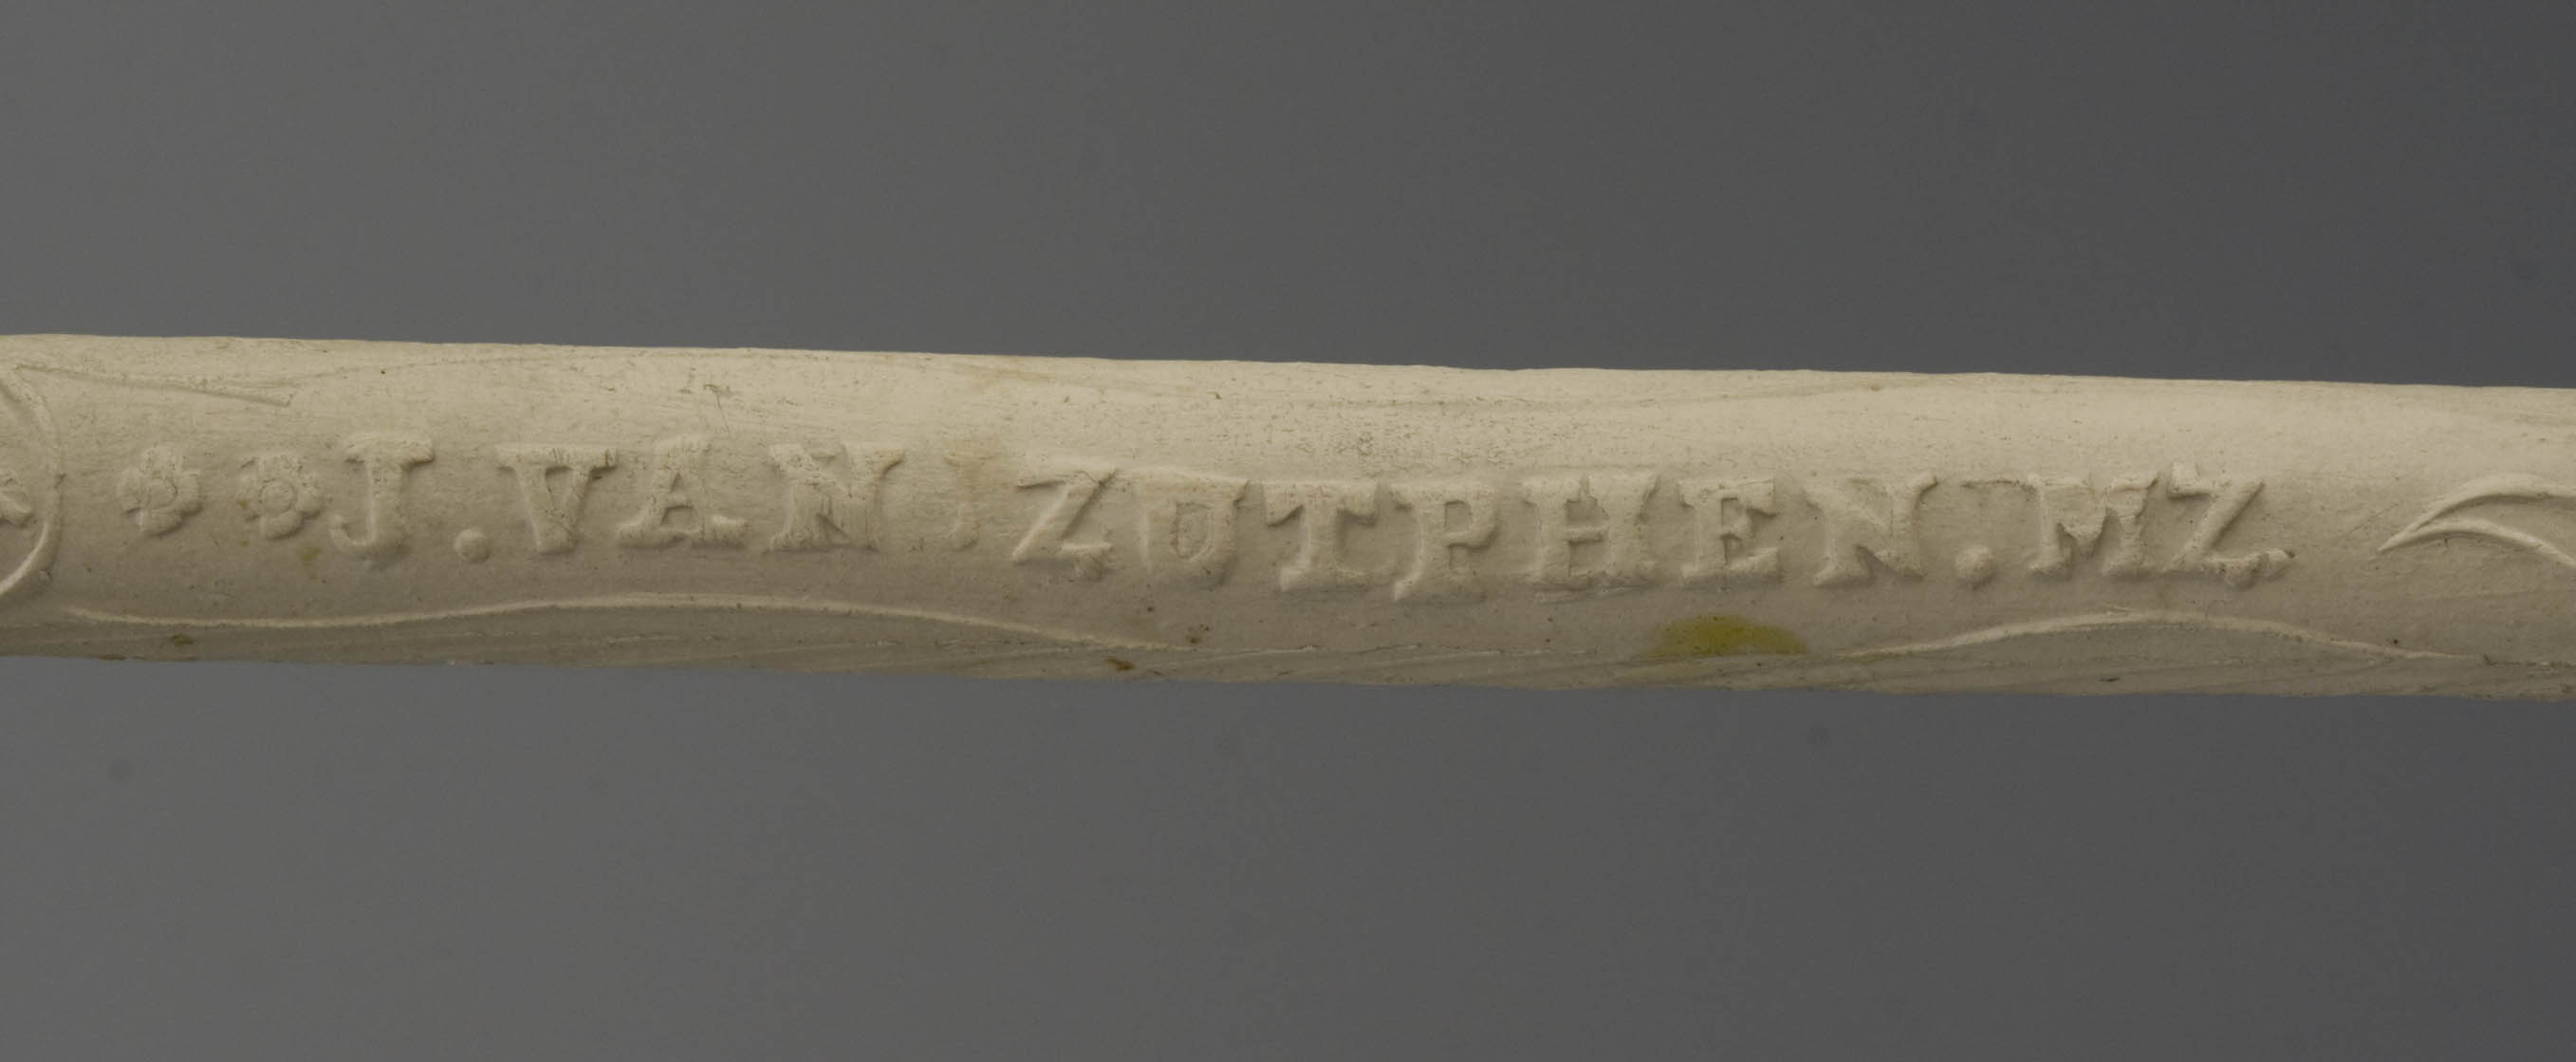 11-16.288  klei-zutphen-bruigegomspijp-1868-25